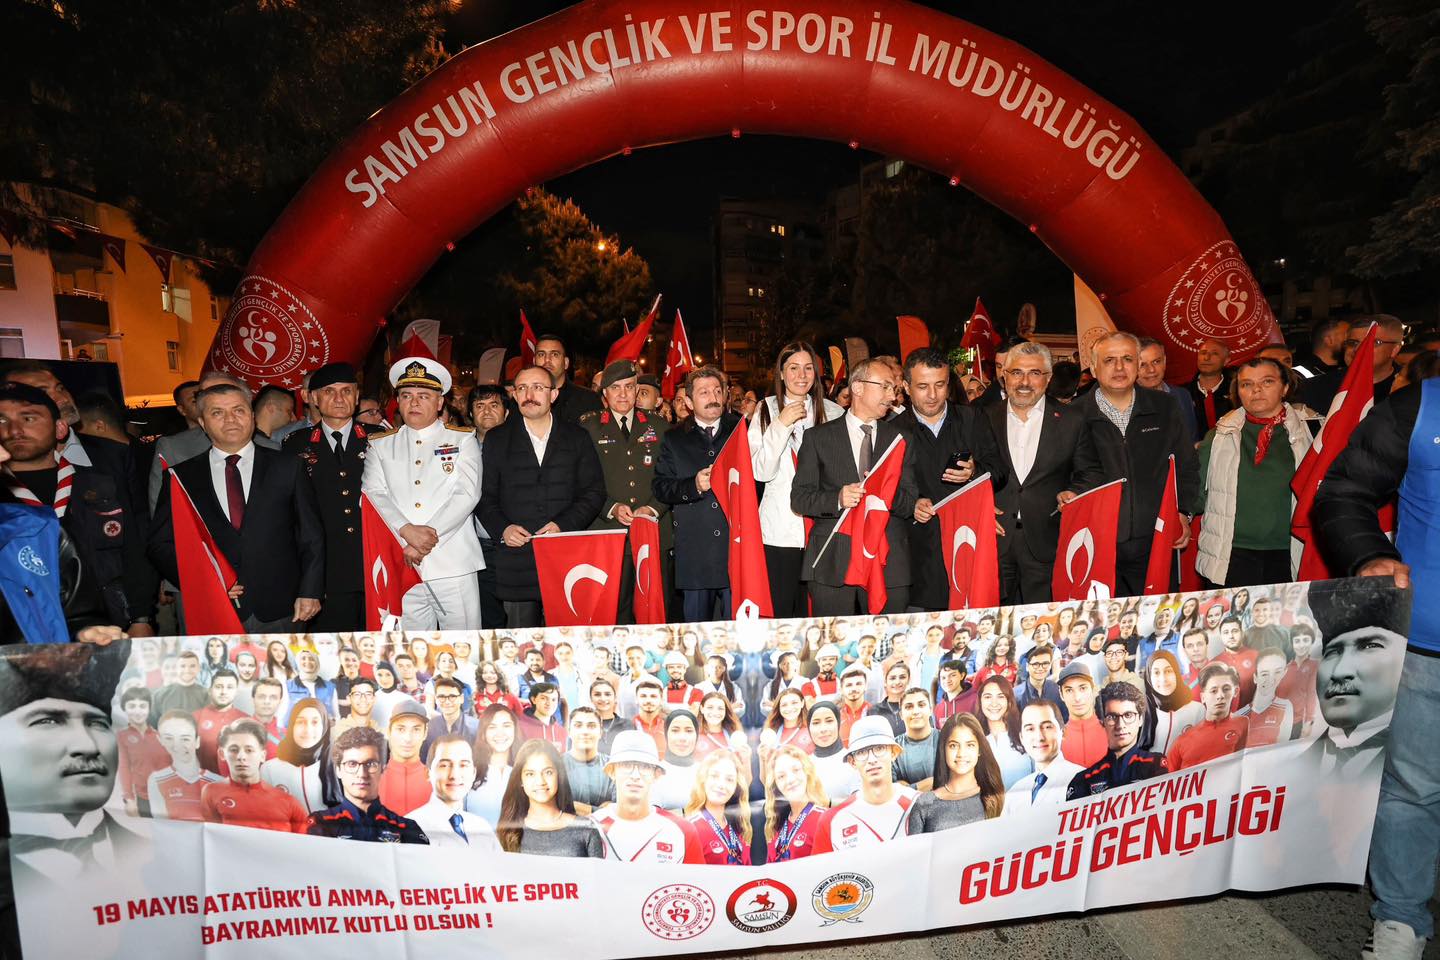 Samsun'da Fener Alayı ve Gençlik Haftası Yürüyüşü Gerçekleştirildi